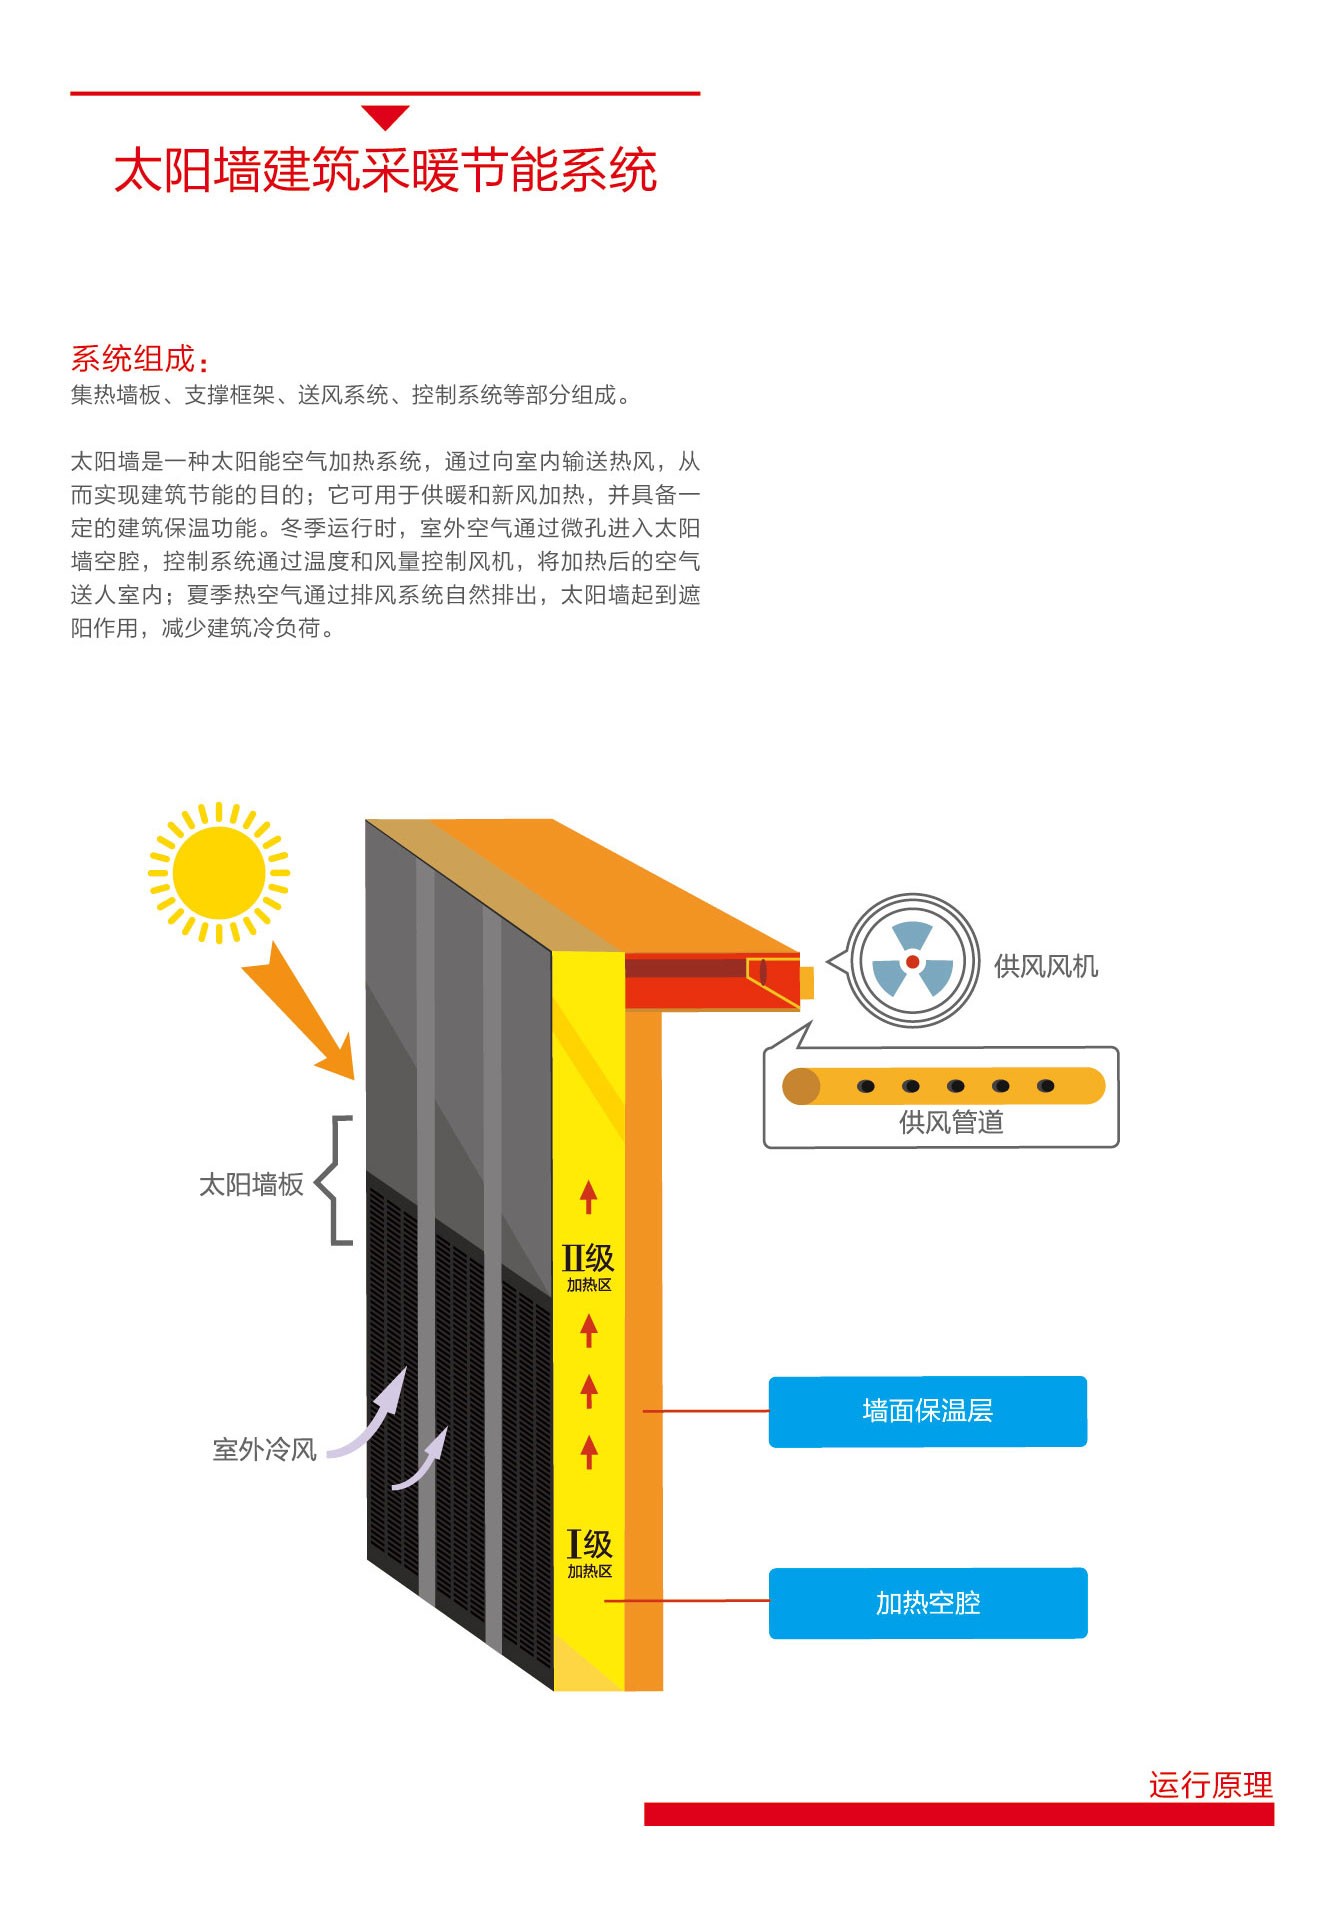 z6com尊龙凯时太阳能|太阳能热水器|燃气热水器|电热水器|抽油烟机|燃气灶具